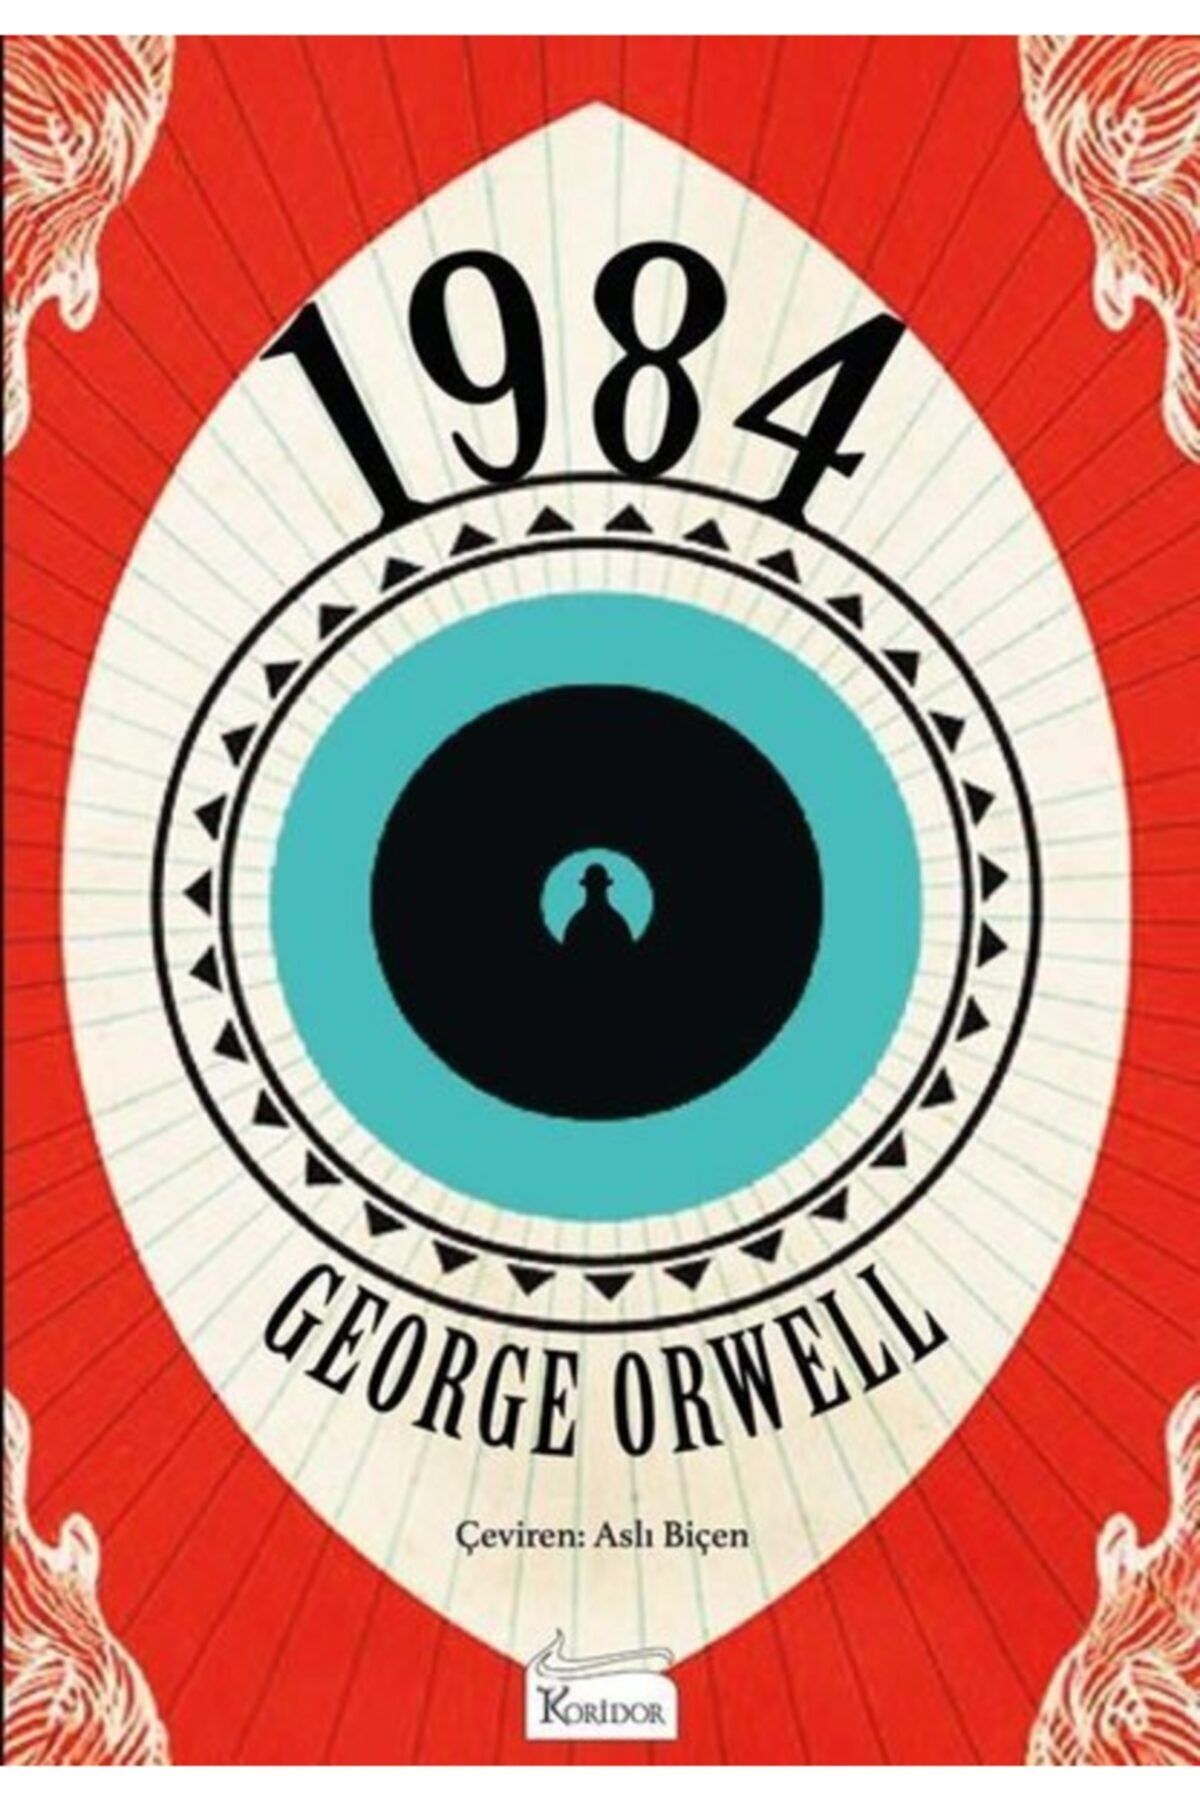 Koridor Yayıncılık 1984 (bez Ciltli), George Orwell, , 1984 (bez Ciltli) Kitabı, 408 Sayfa